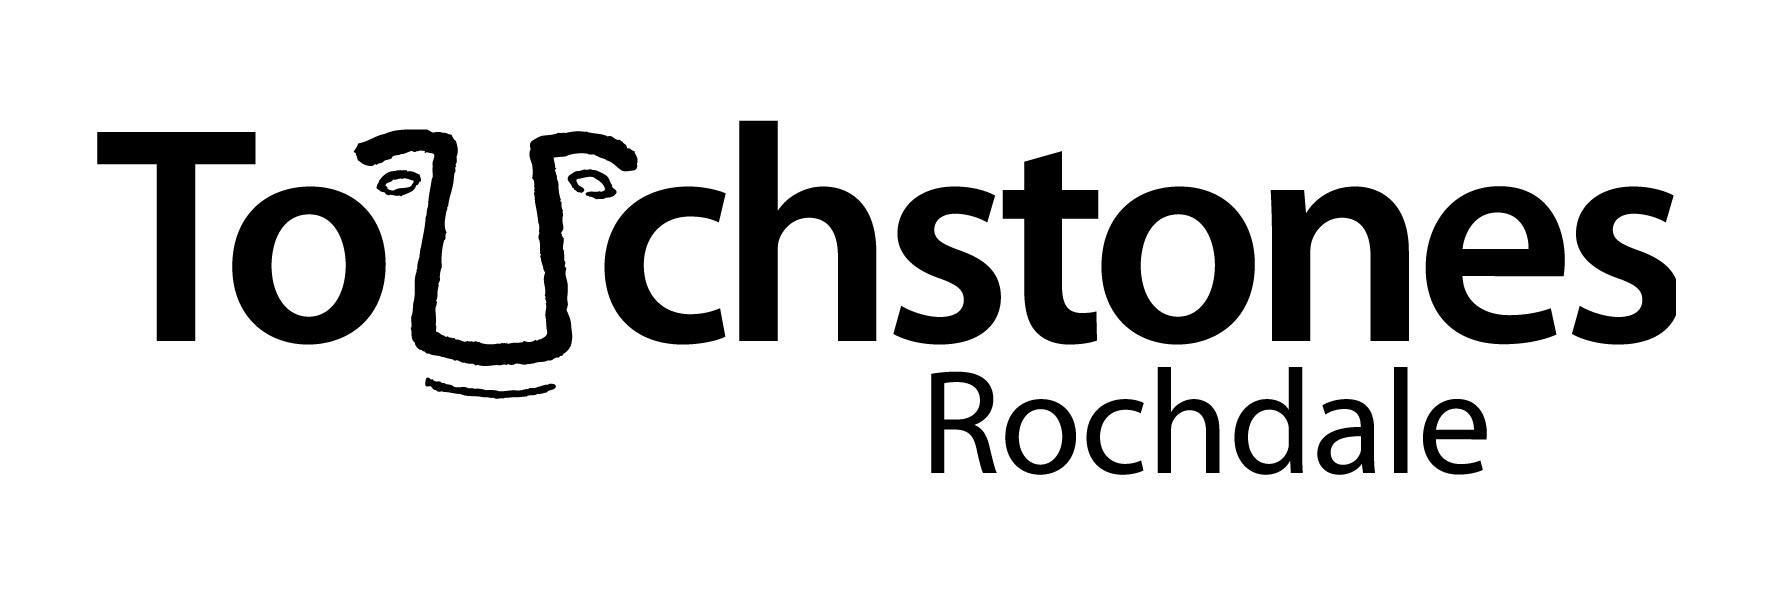 Touchstones logo.JPG